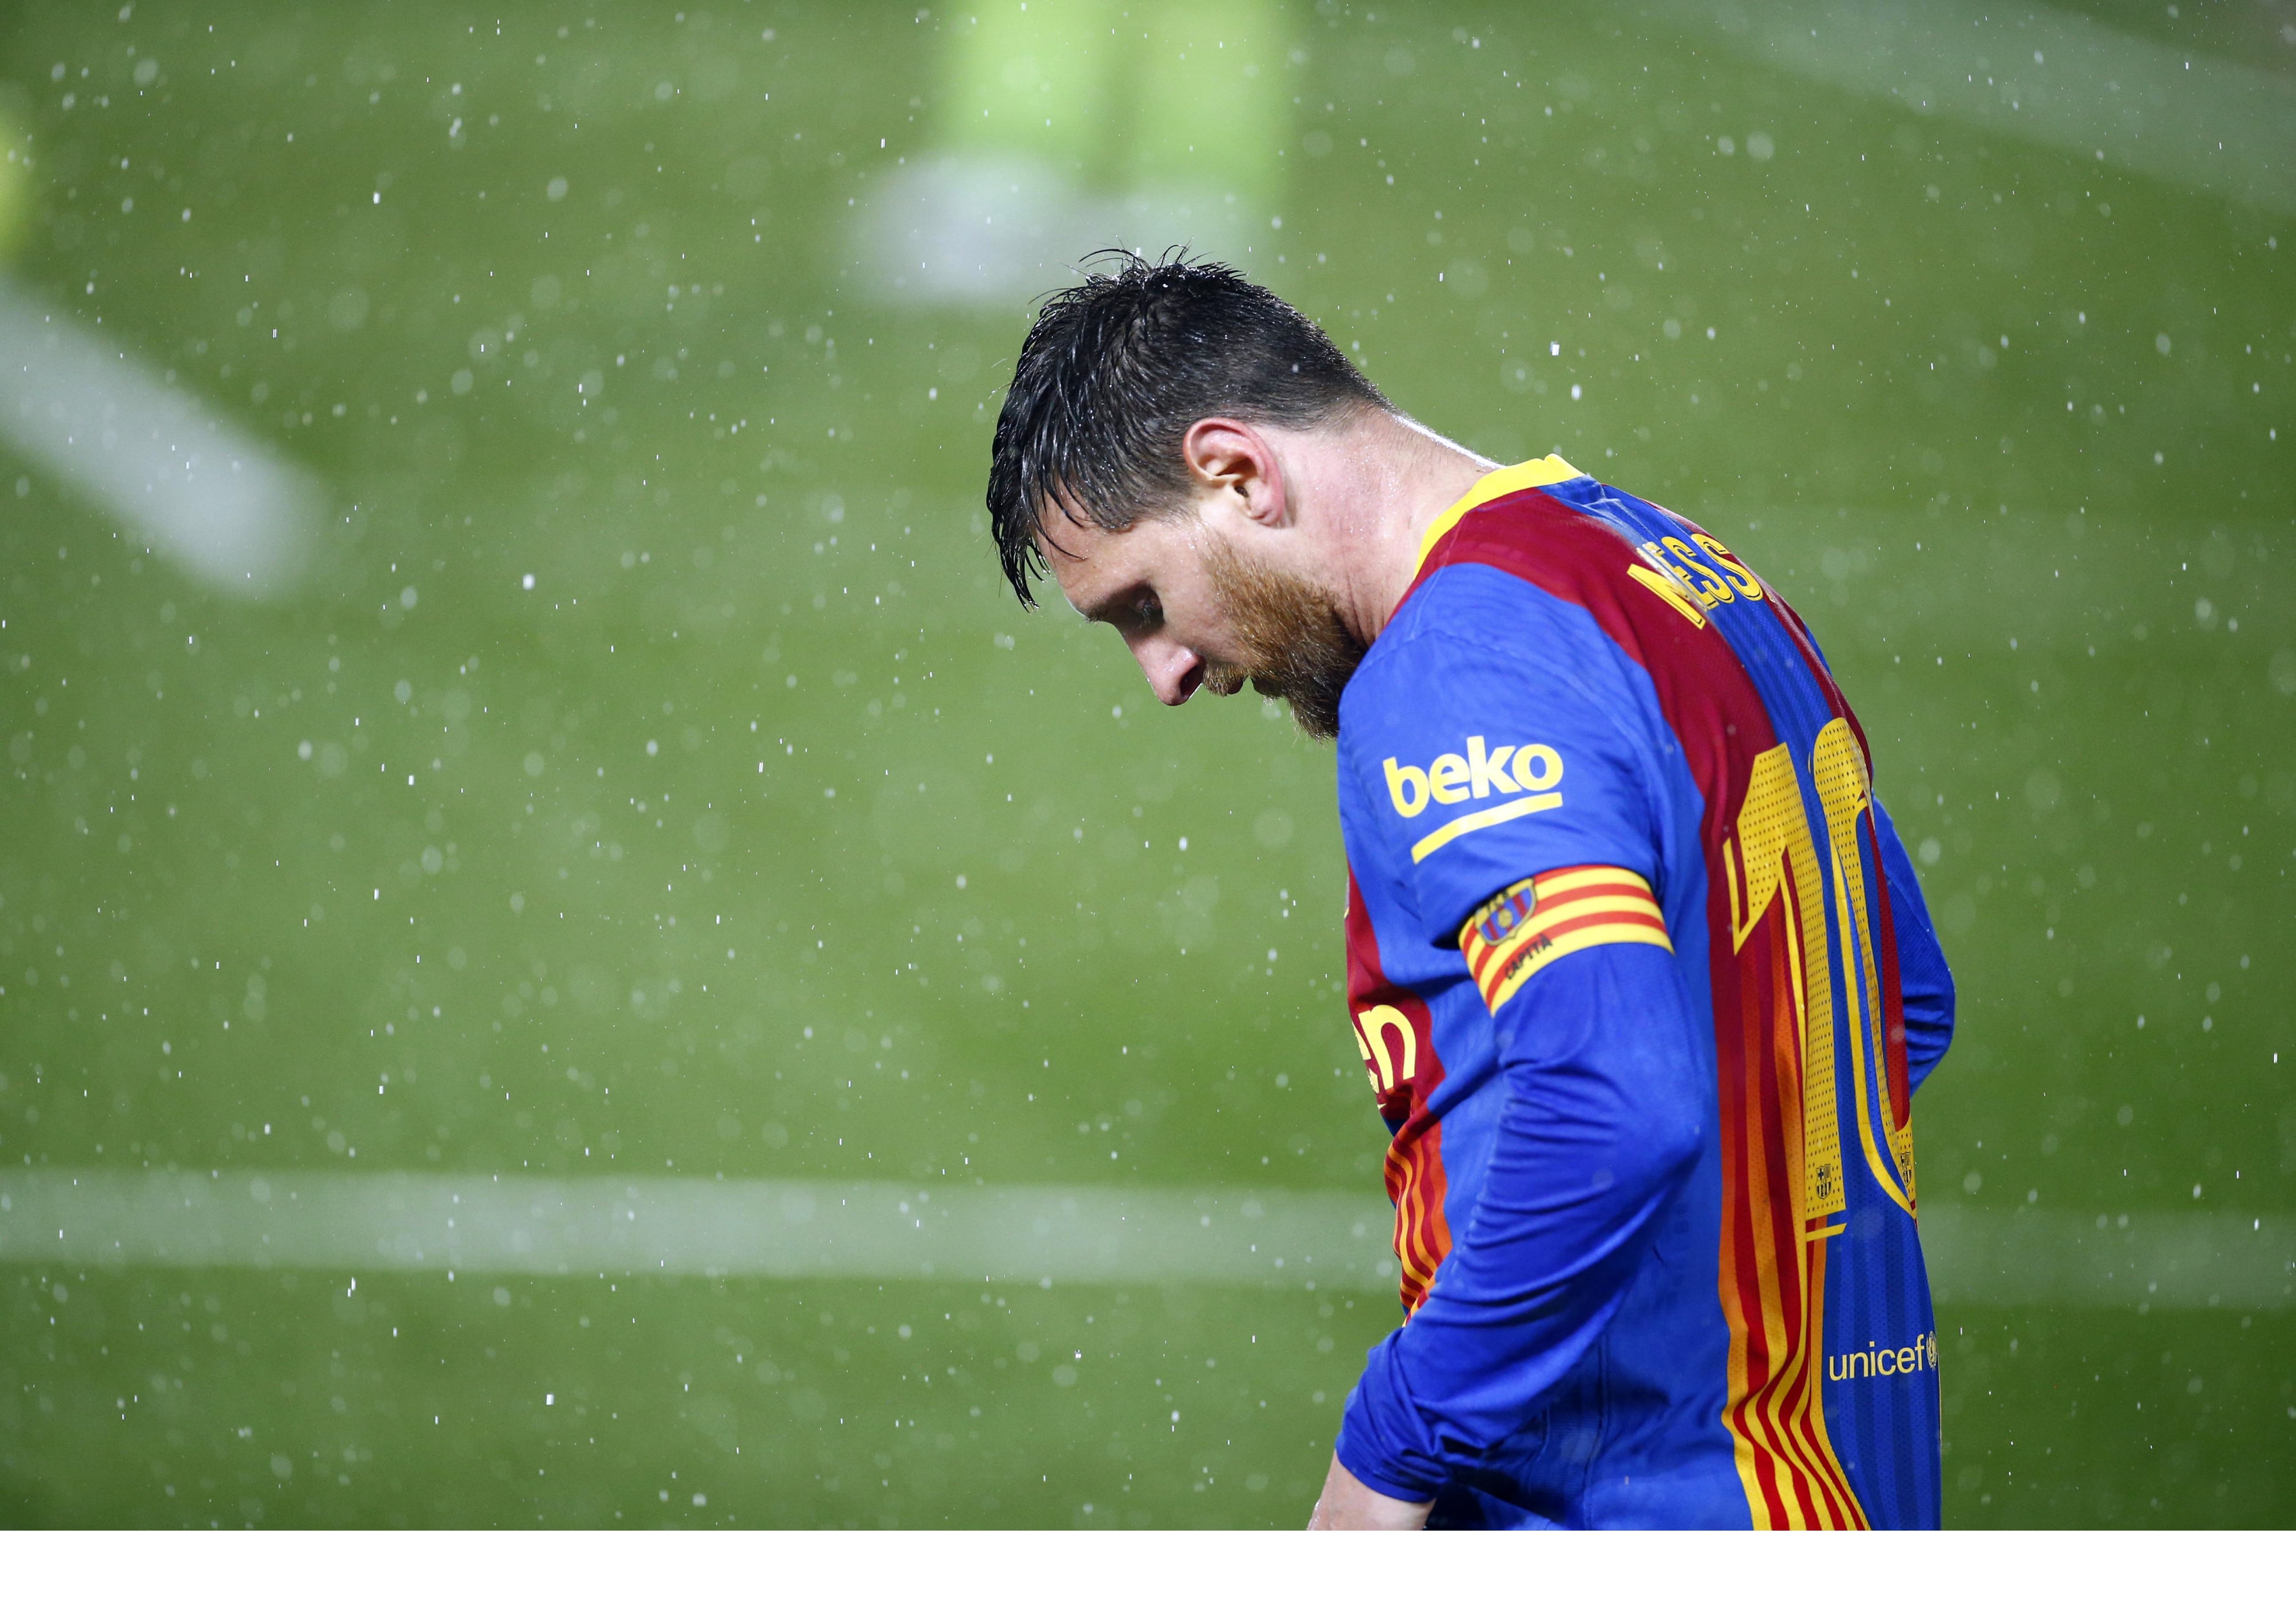 Lionel Messi im Trikot des FC Barcelona